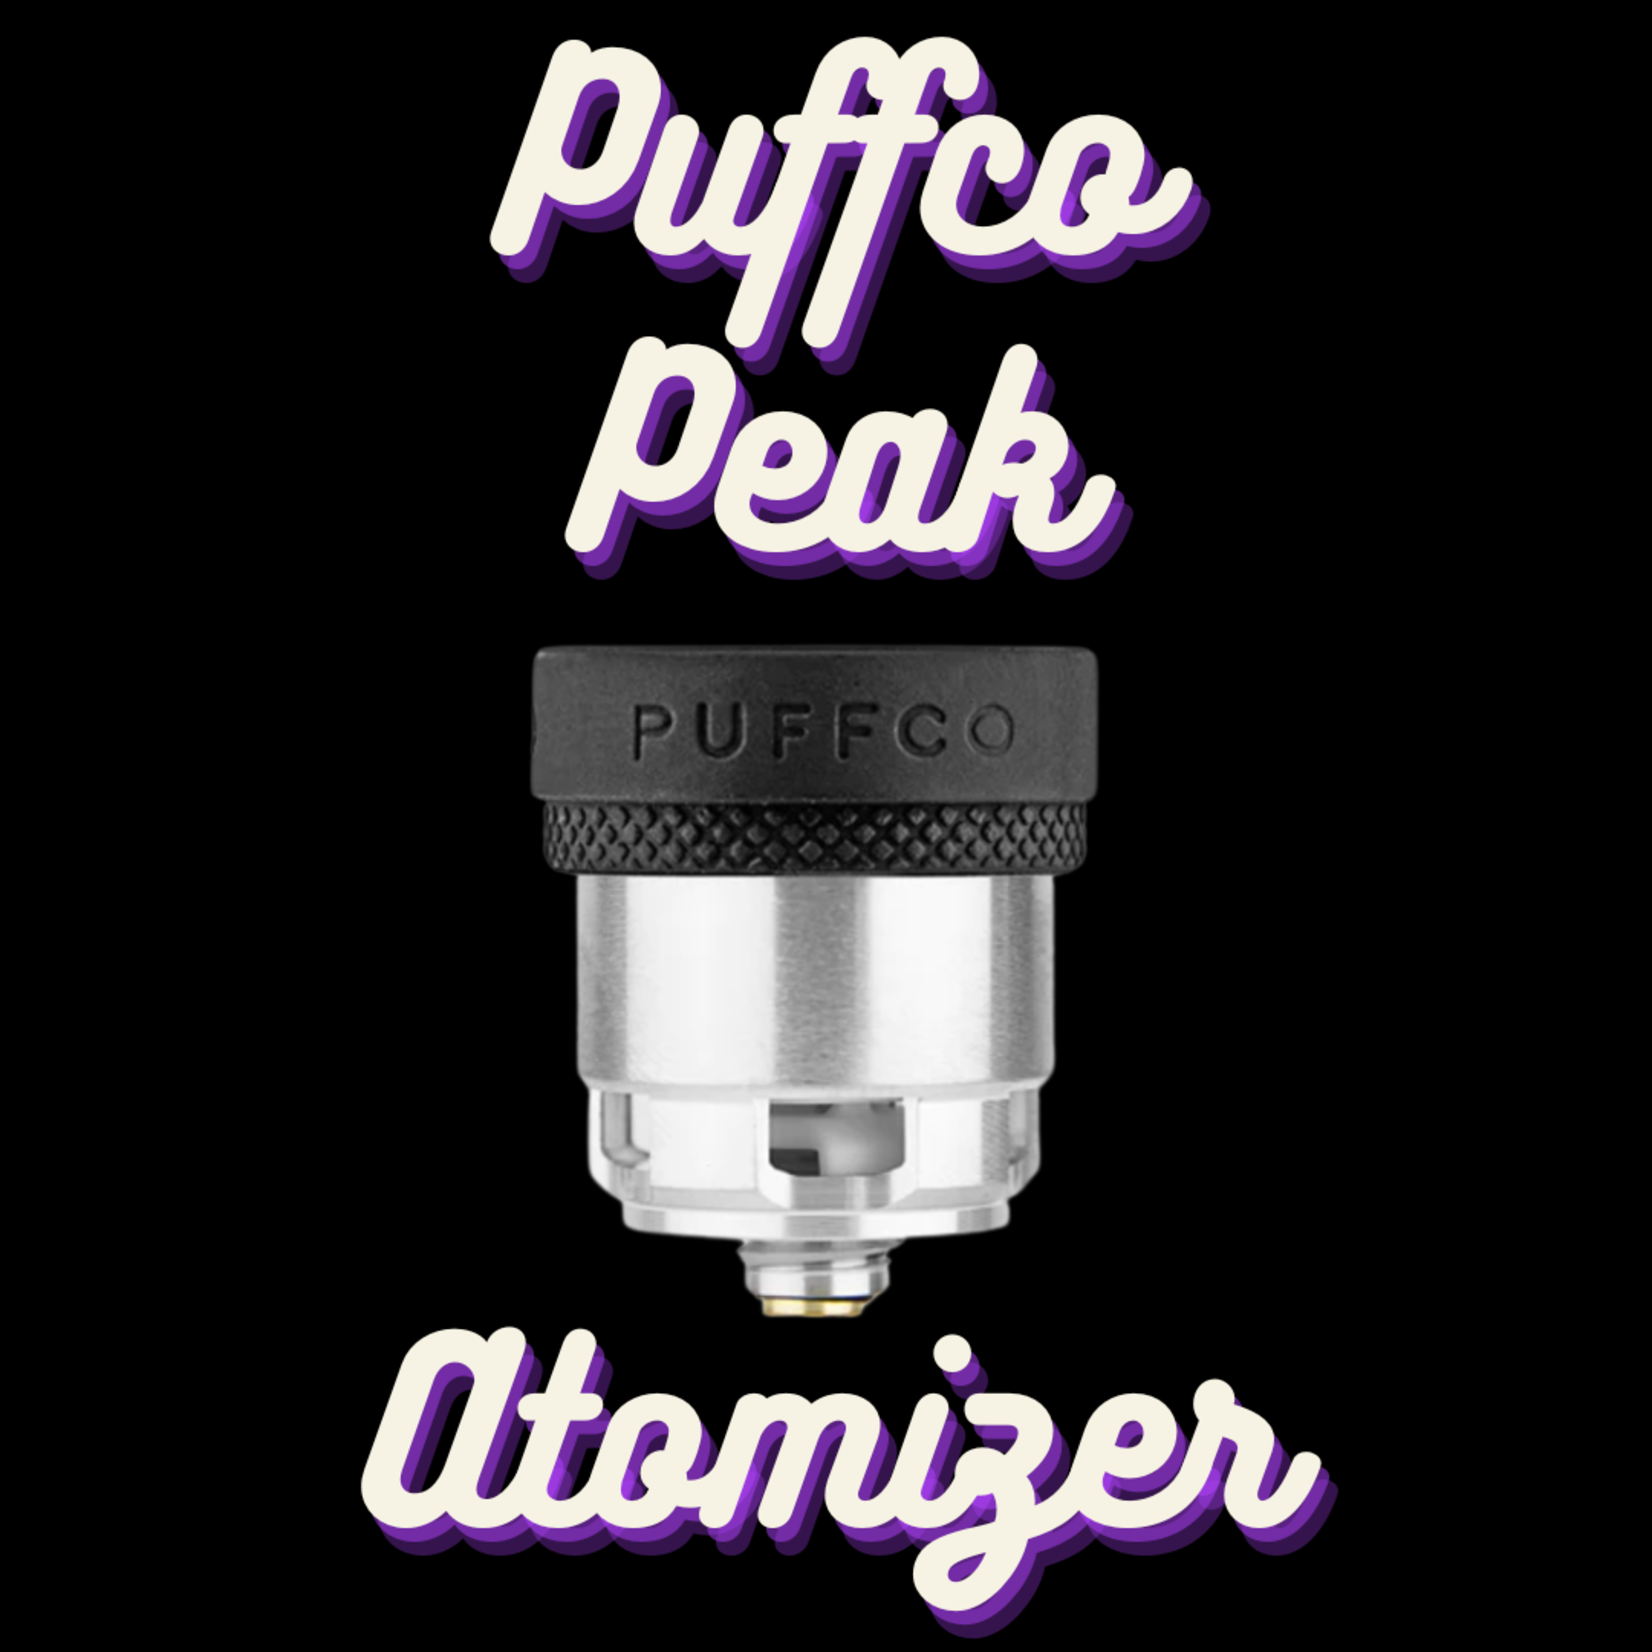 Puffco Puffco Peak Atomizer